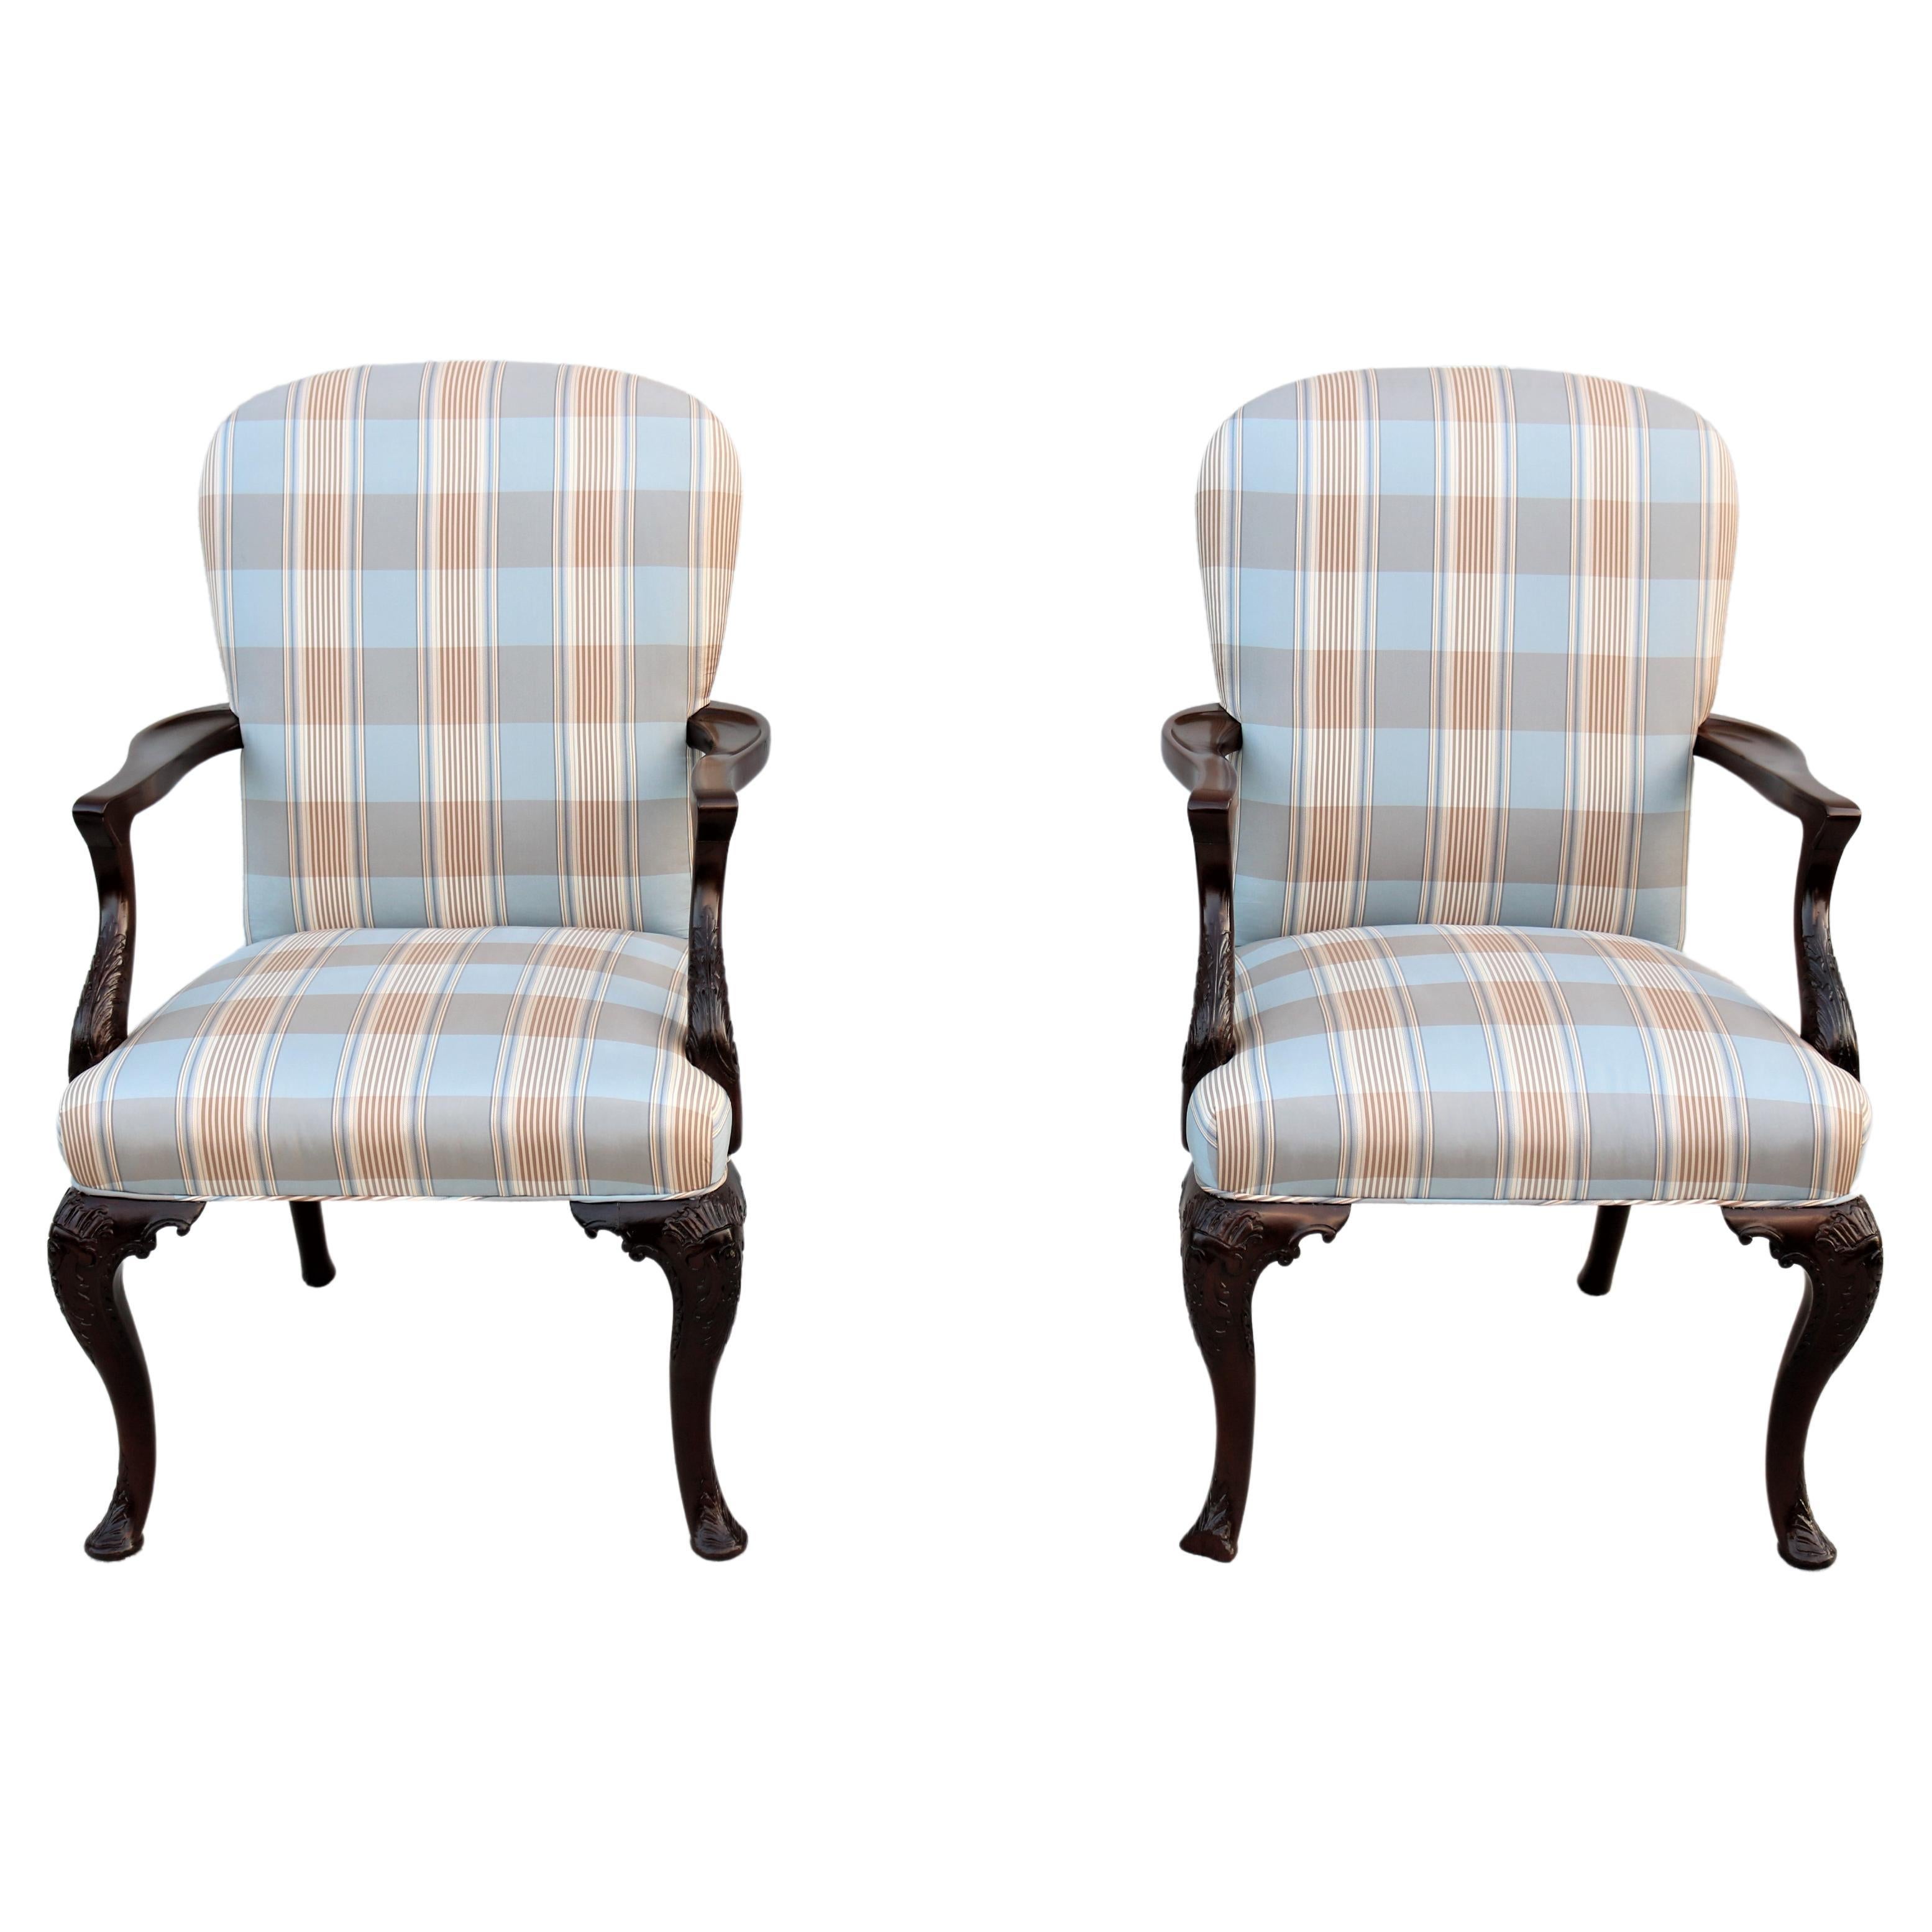 Vintage Traditionelle Queen Anne Style Nussbaum Sessel gepolstert zurück, ein Paar